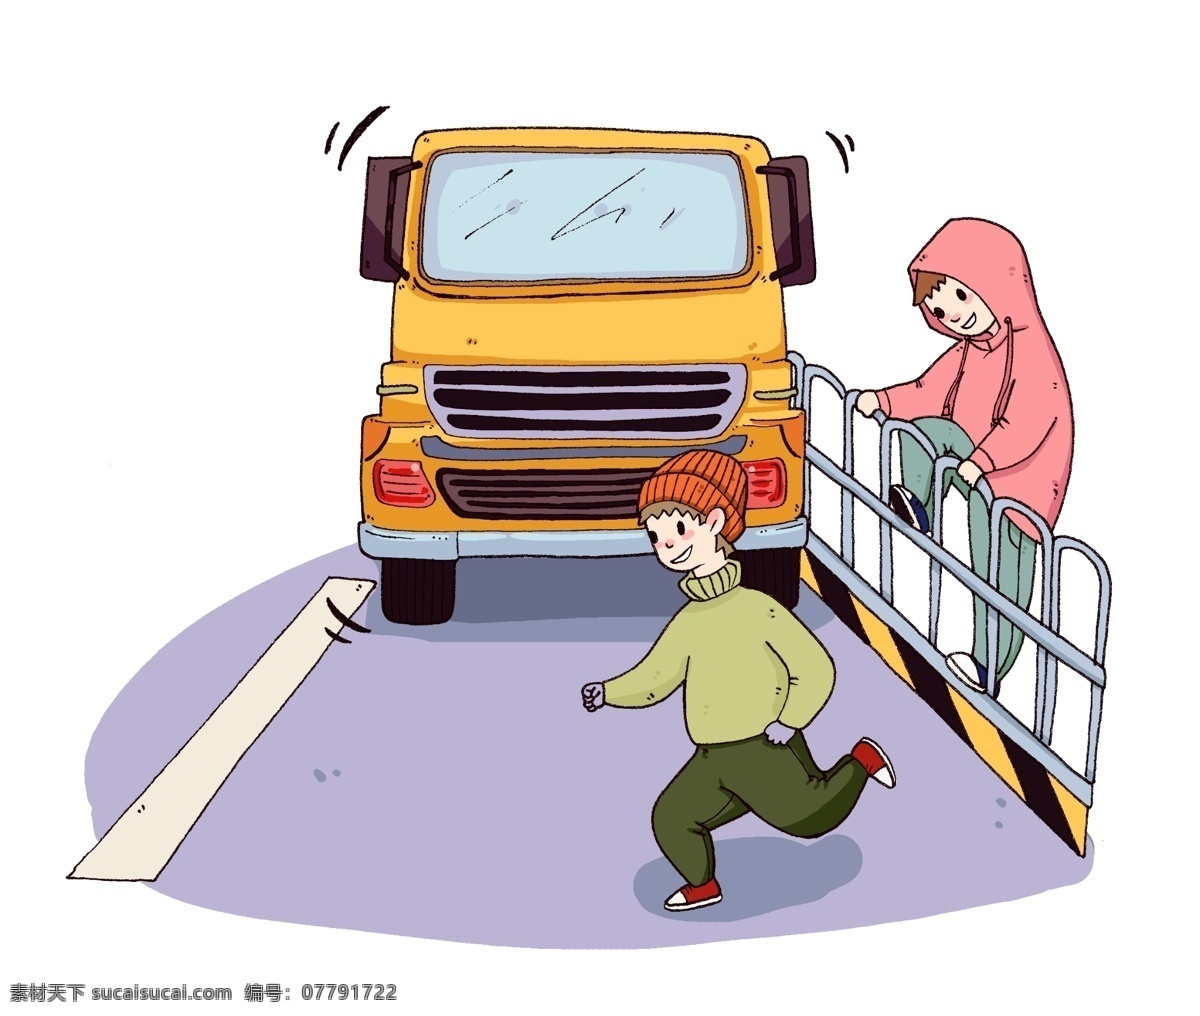 卡通 小 男孩 马路 插画 黄色大卡车 小男孩过马路 小朋友爬栏杆 注意安全 安全过马路 安全教育插画